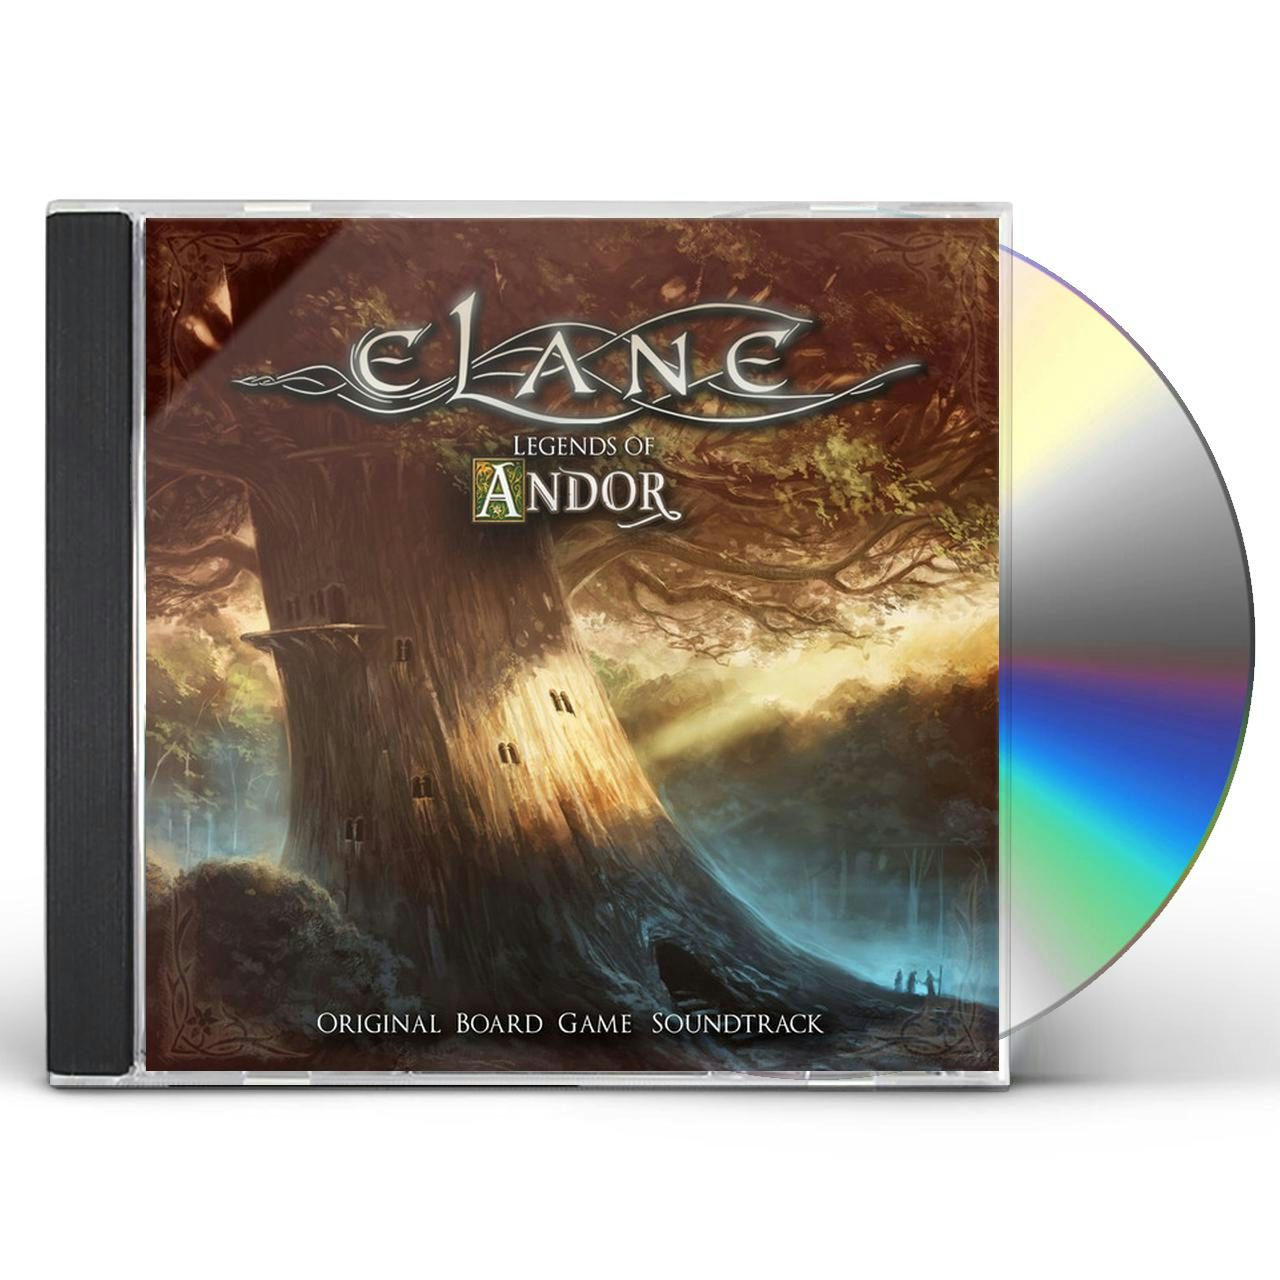 LEGENDS OF ANDOR / Original Soundtrack CD - Elane